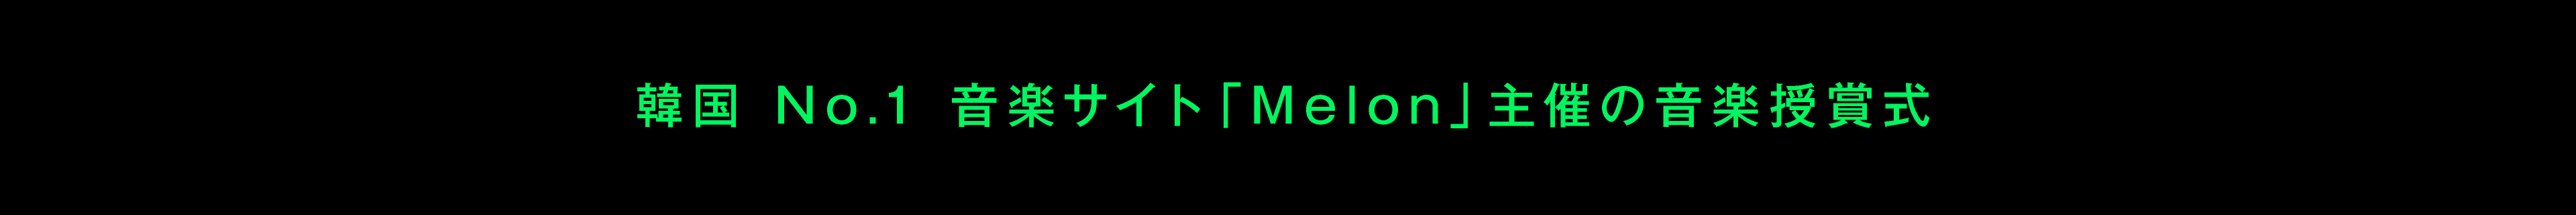 韓国No.1 音楽サイト「Melon」主催の音楽授賞式